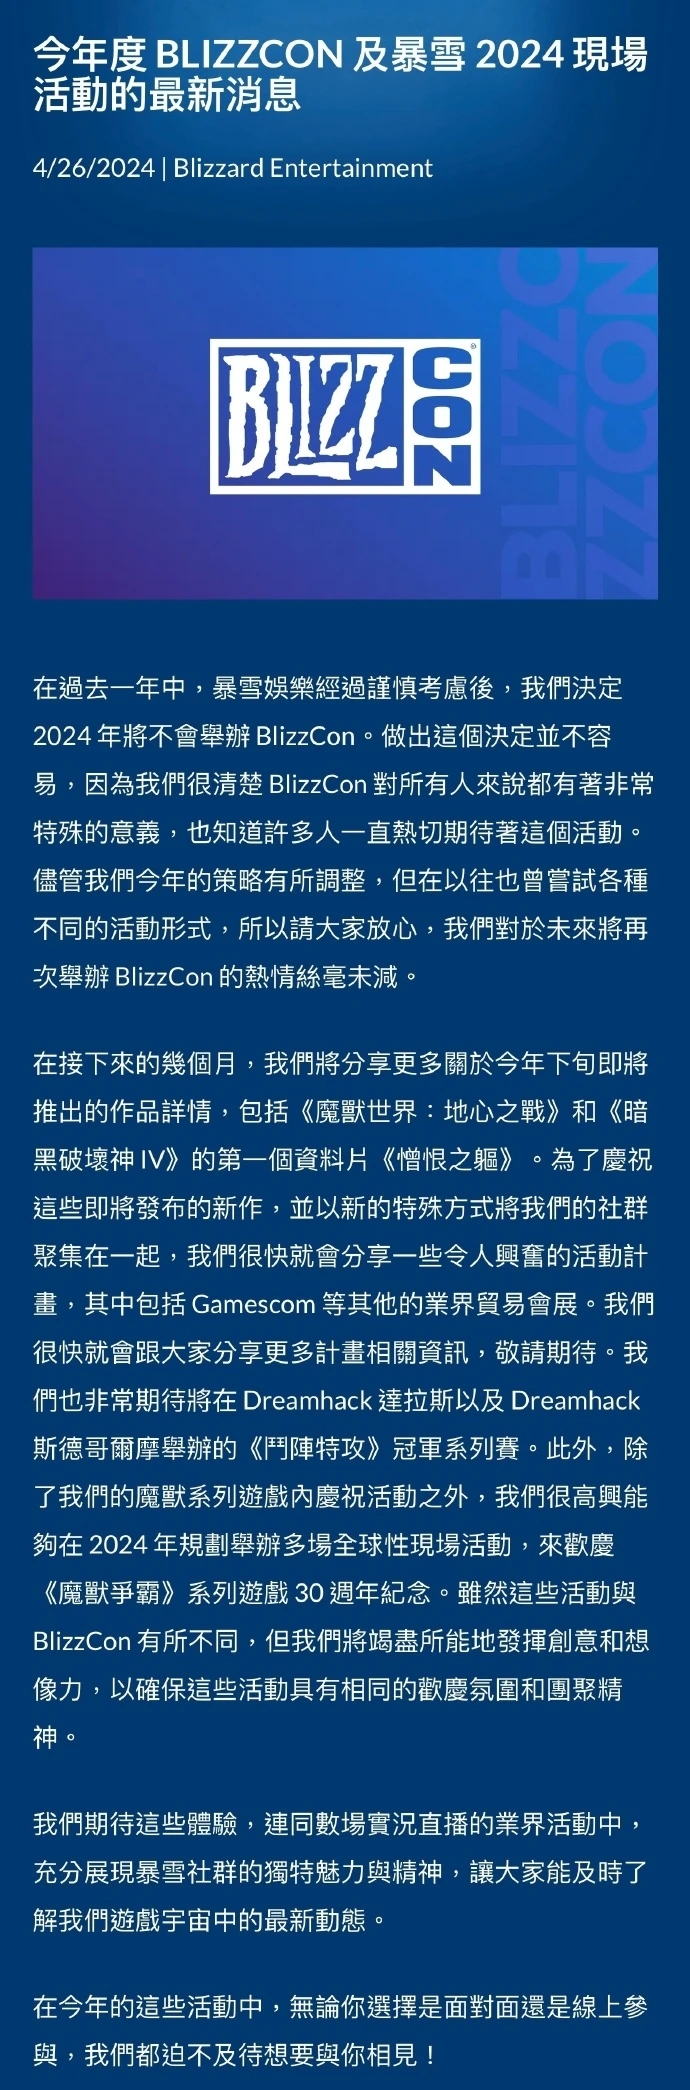 2024年暴雪嘉年华宣告取消